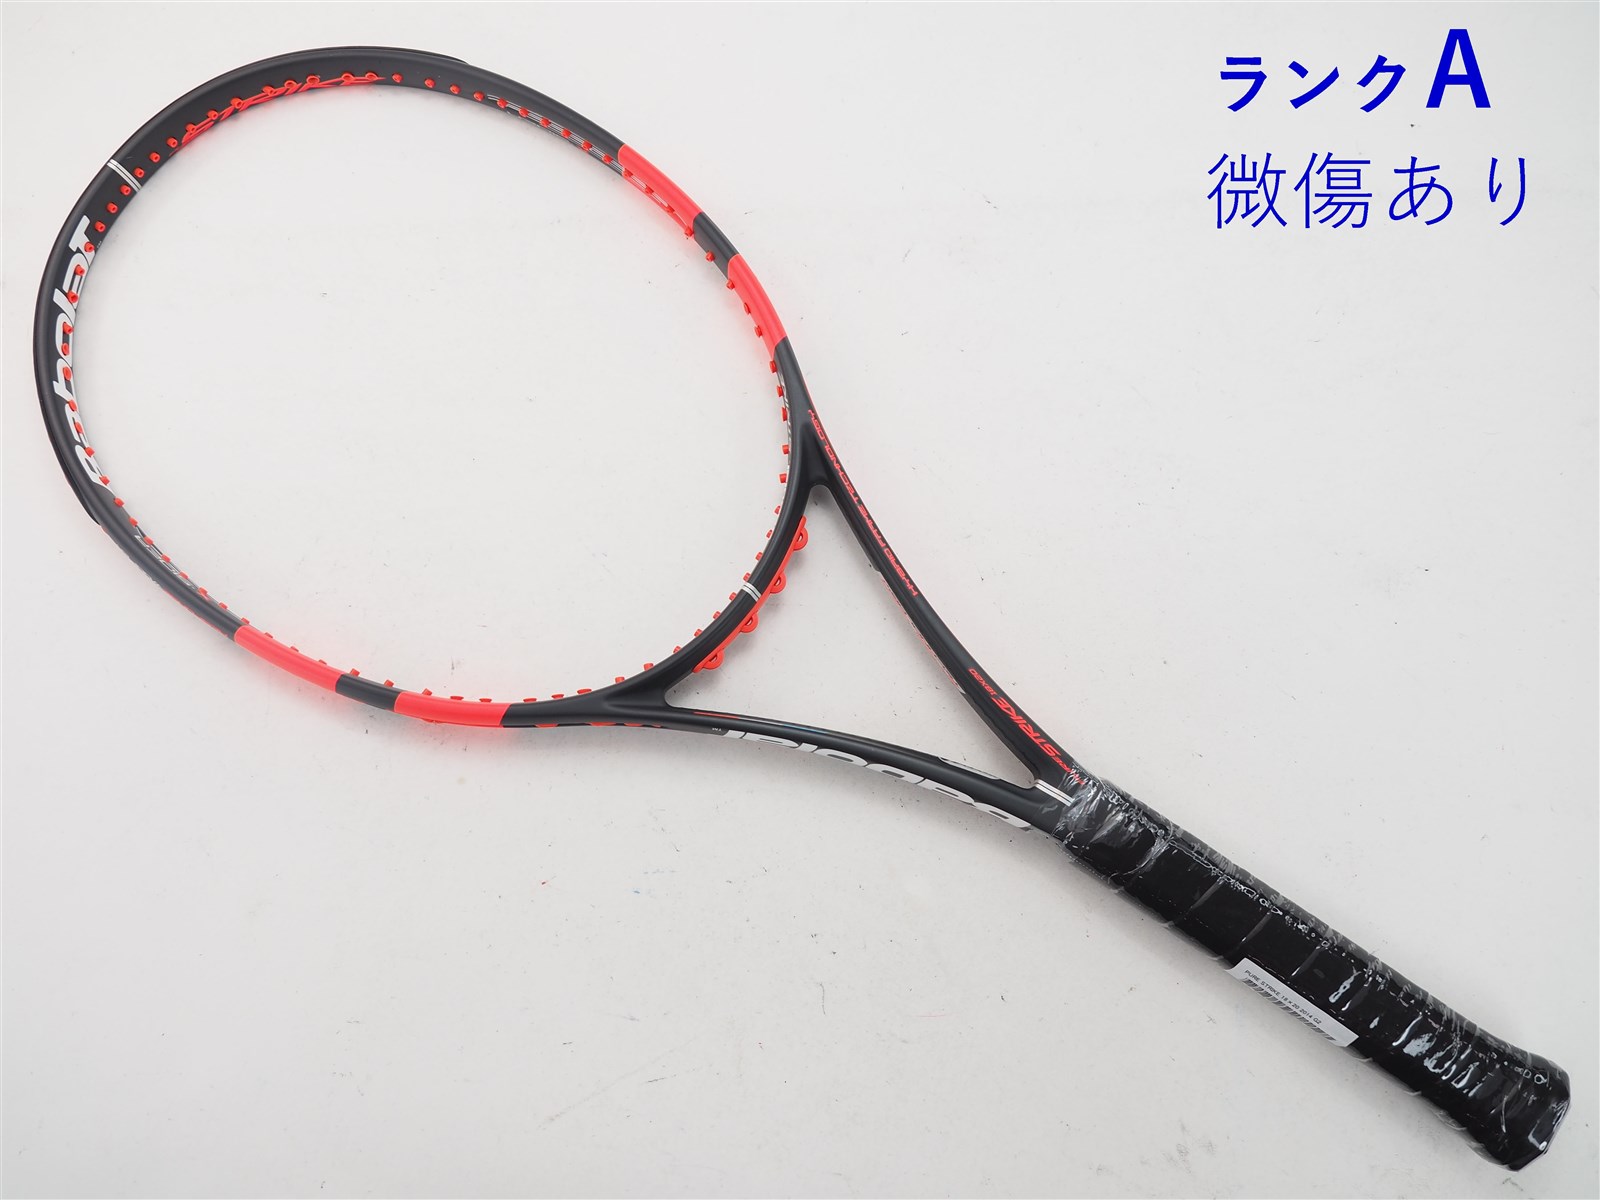 バボラ 硬式テニスラケット ピュア ストライク 18×20 BF101197 Babolat